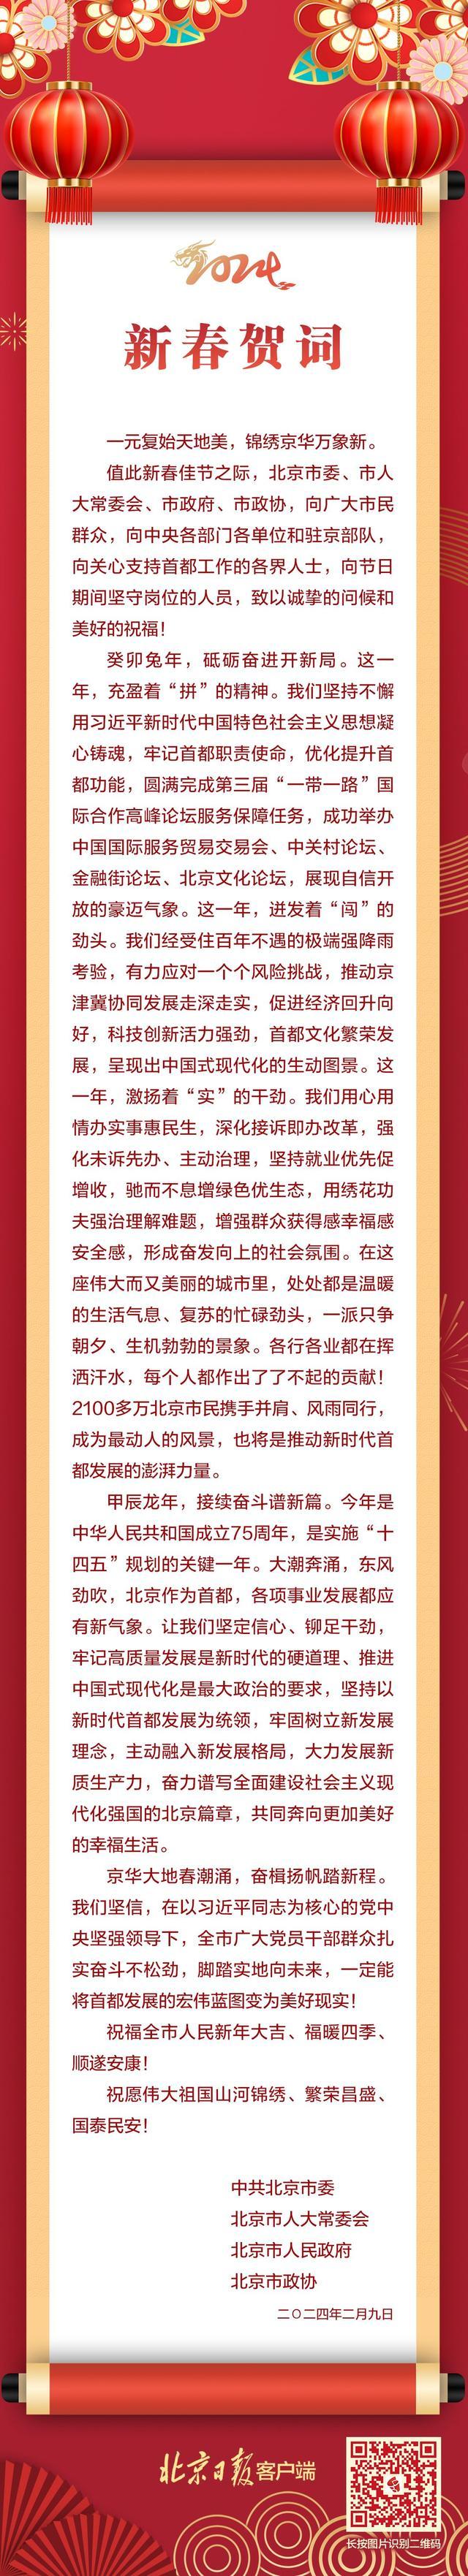 北京市委、市人大常委会、市政府、市政协联合发布新春贺词